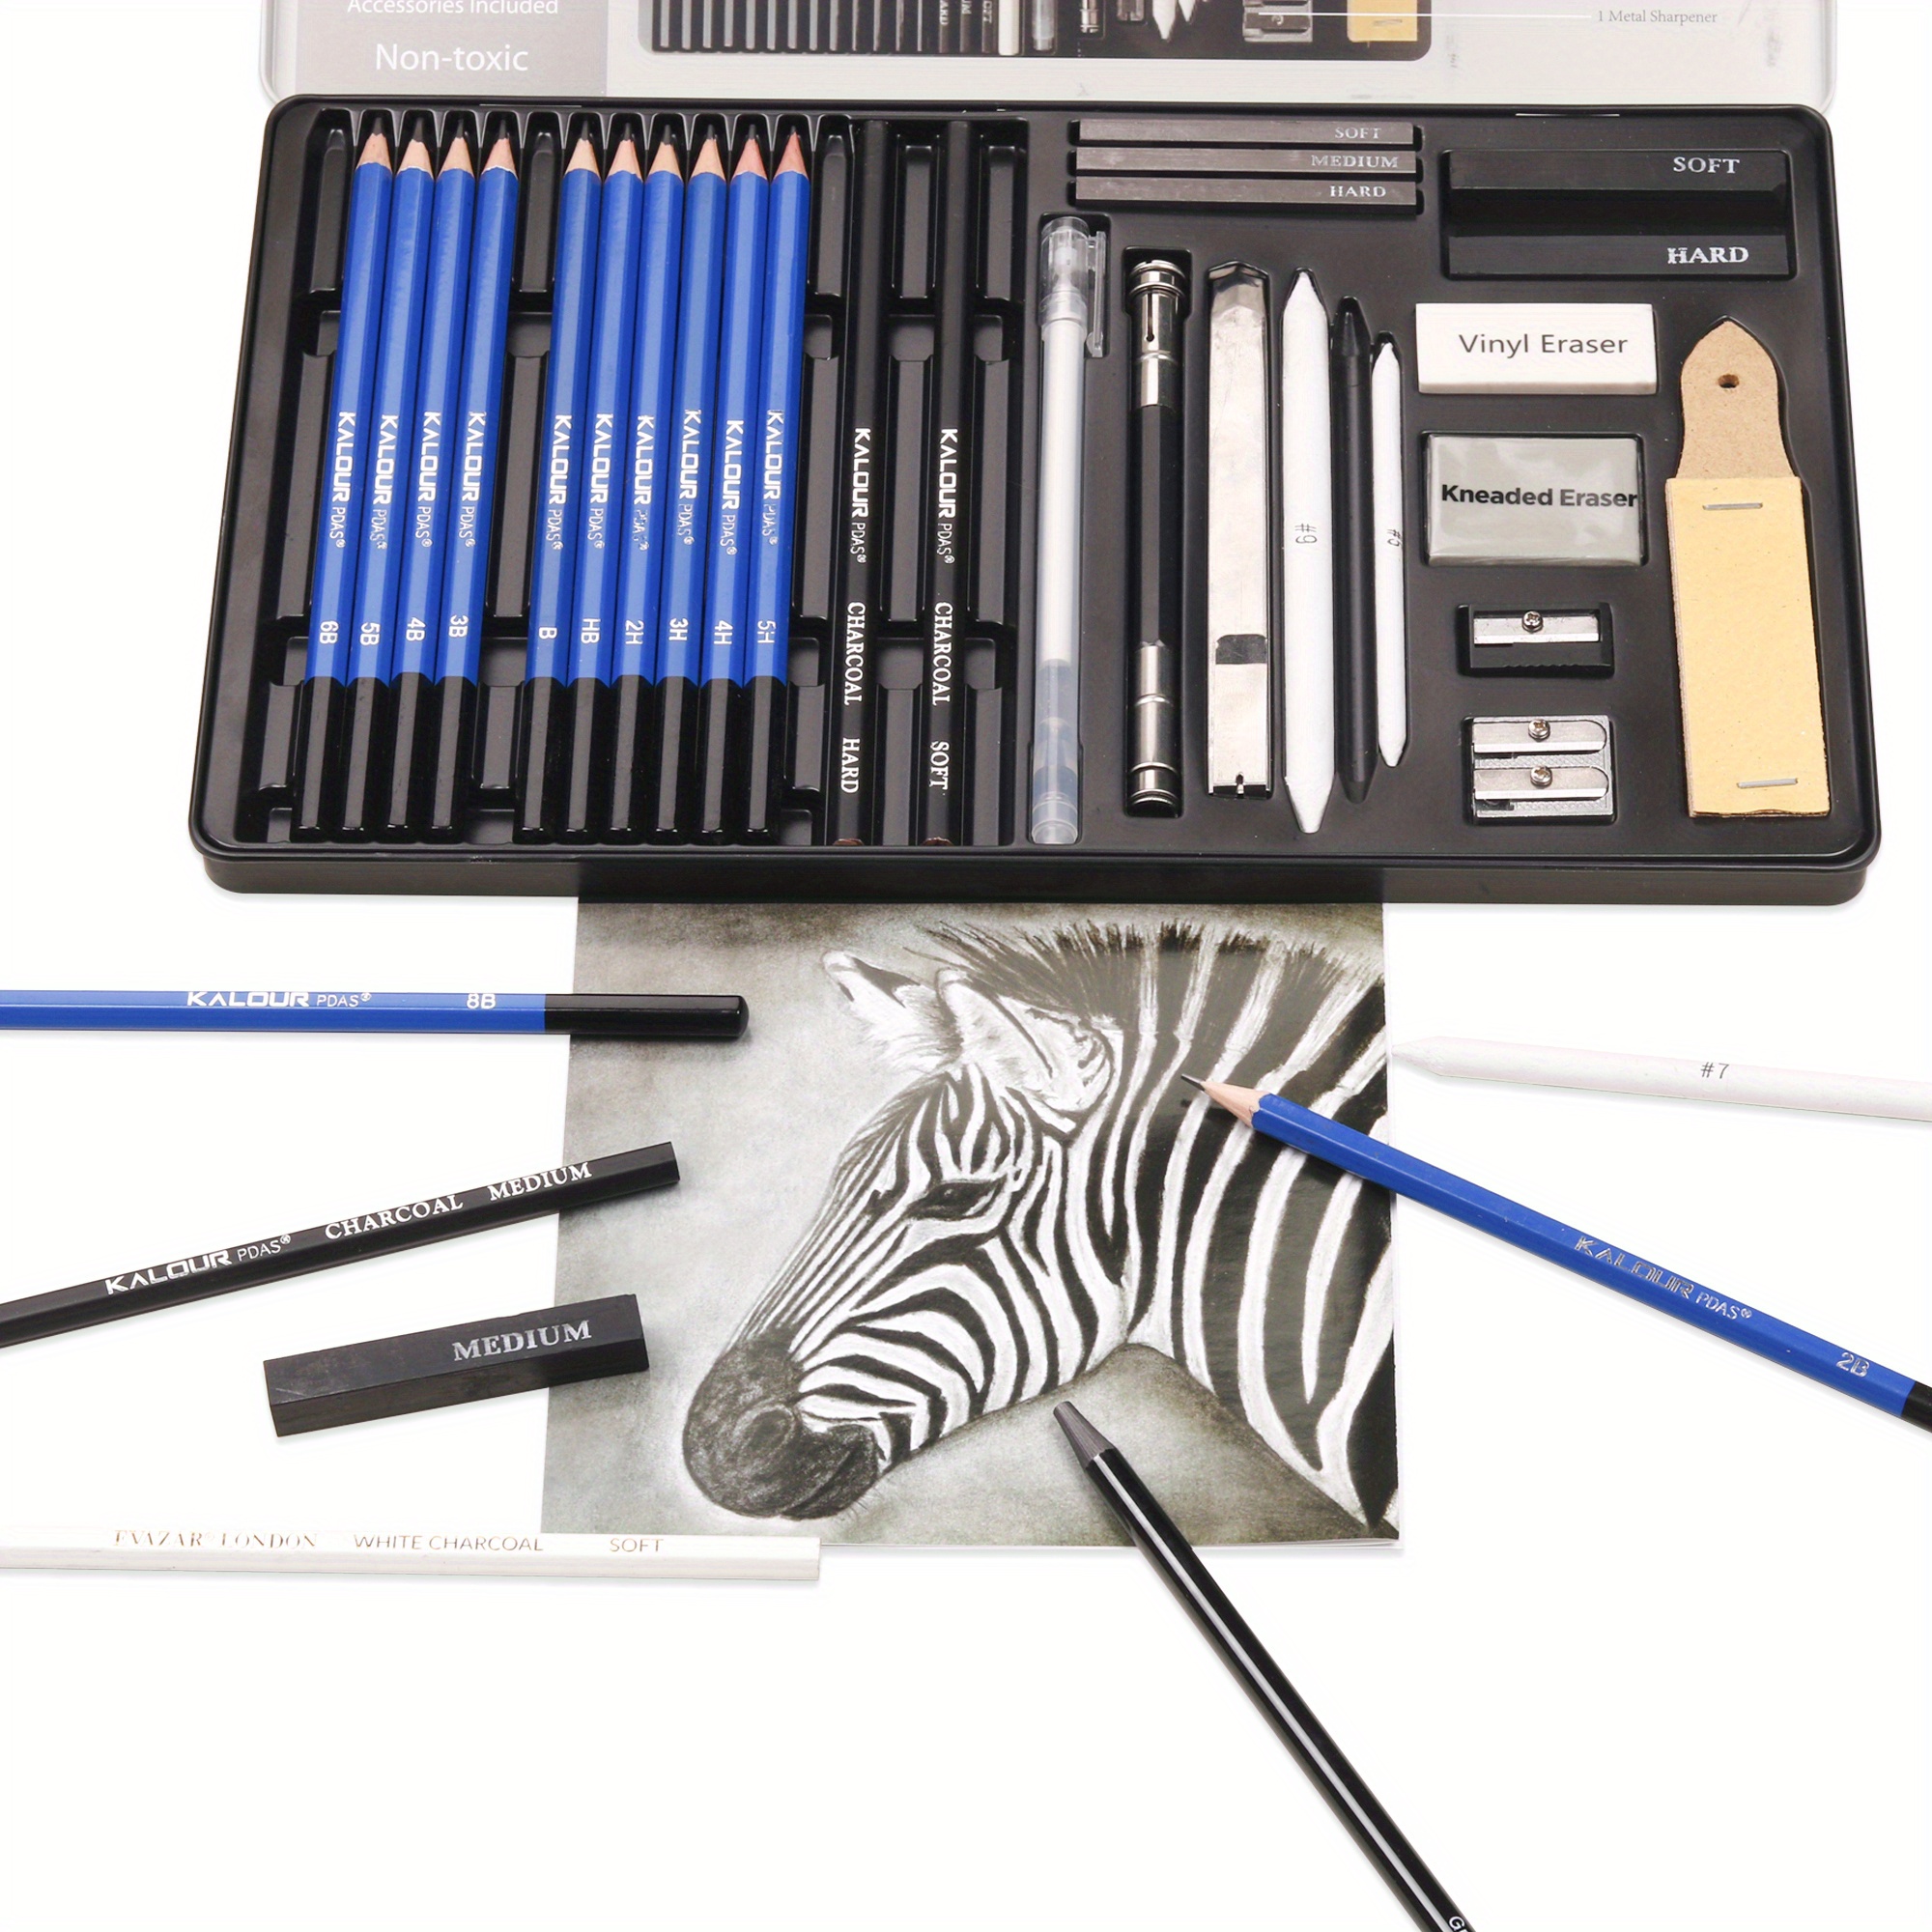 Wynhard Sketching Pencils Drawing Pencil Set for Artist Sketch Pencil Set  Graphite Pencils with Metal Case